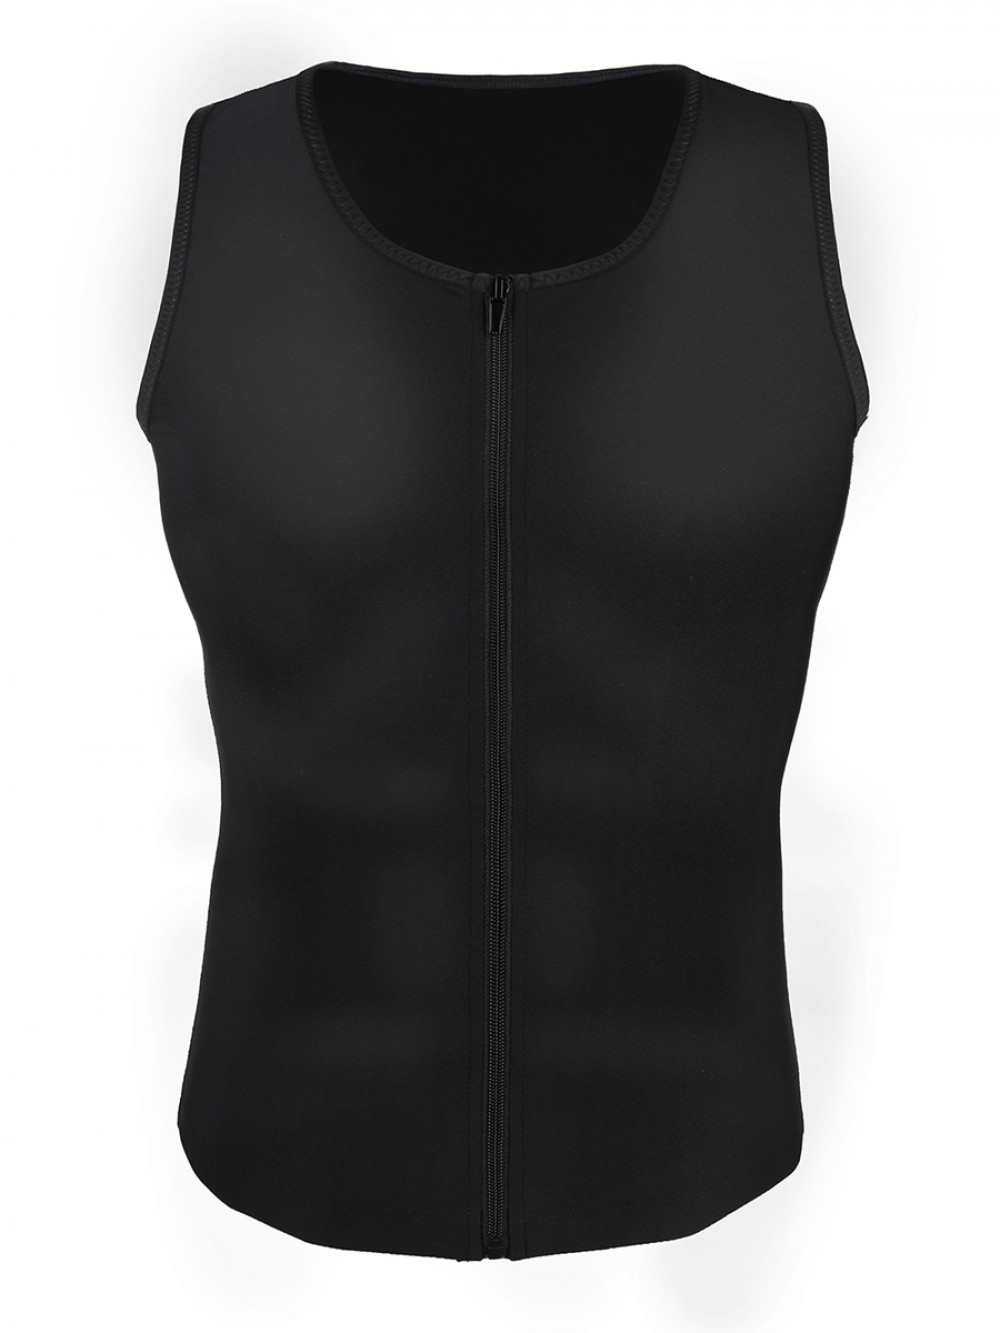 Black Men's Neoprene Slimming Vest With Zipper Fat Burning